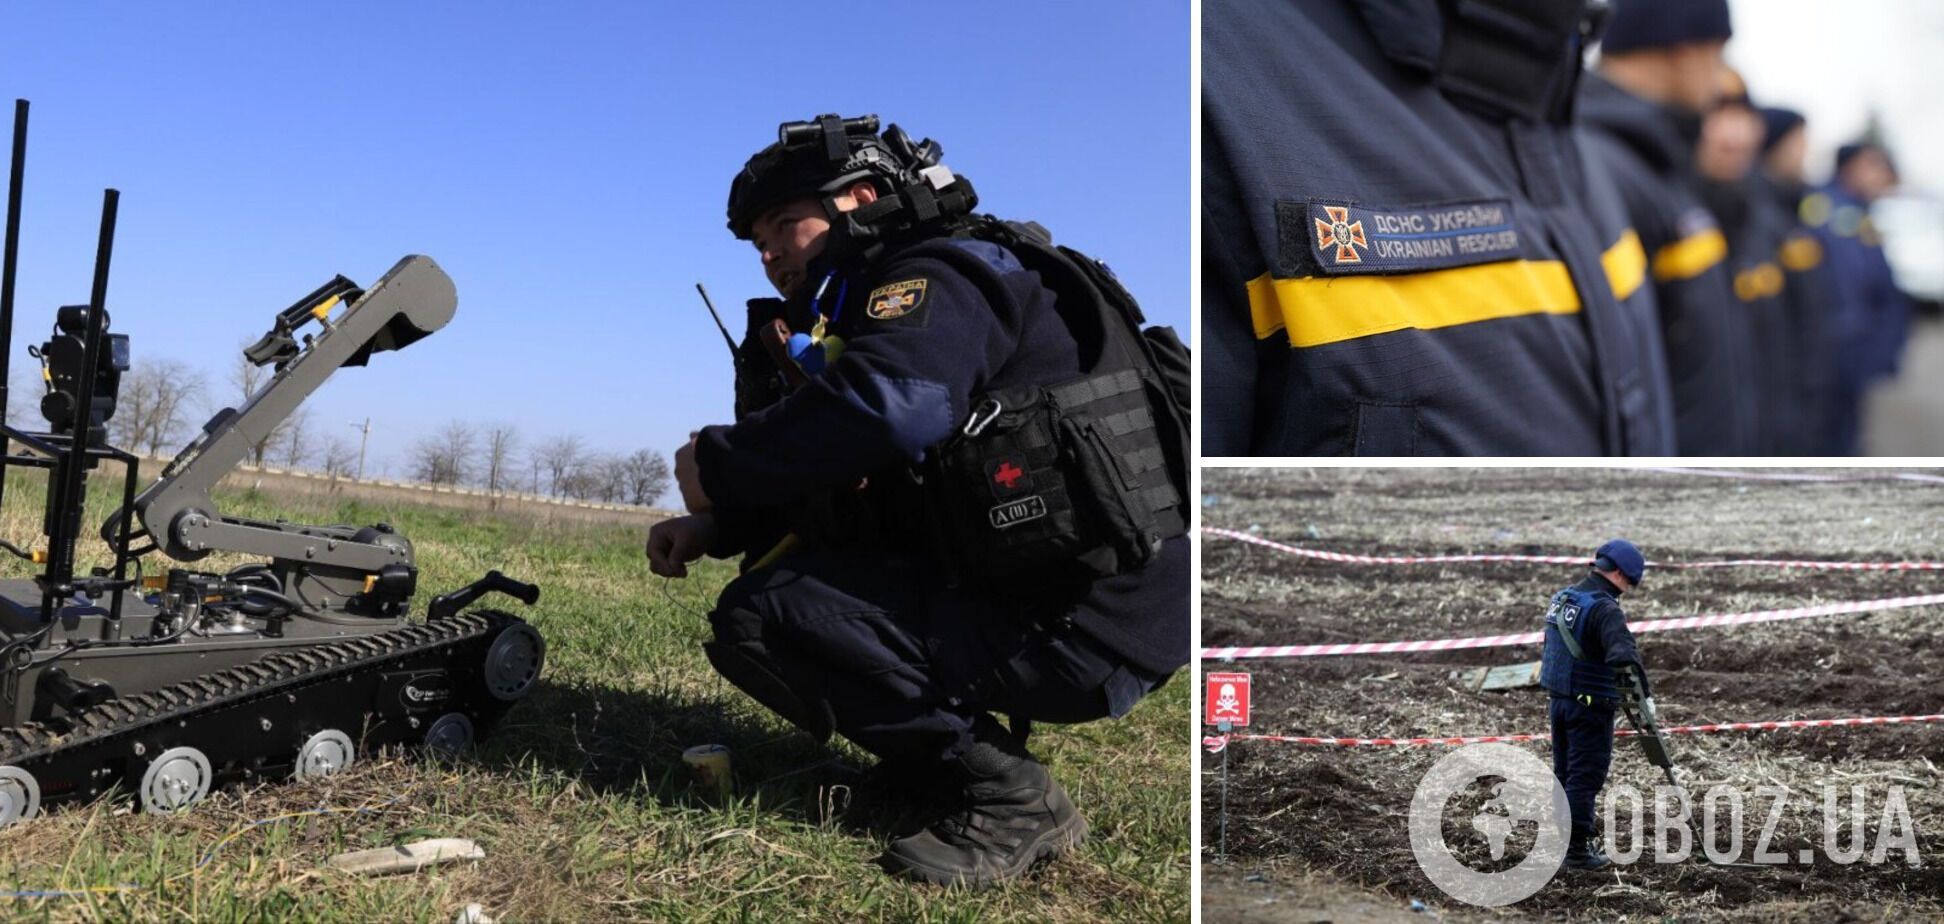 Армия РФ сбросила взрывчатку с дрона прямо на украинских спасателей: детали гибели 6 героев